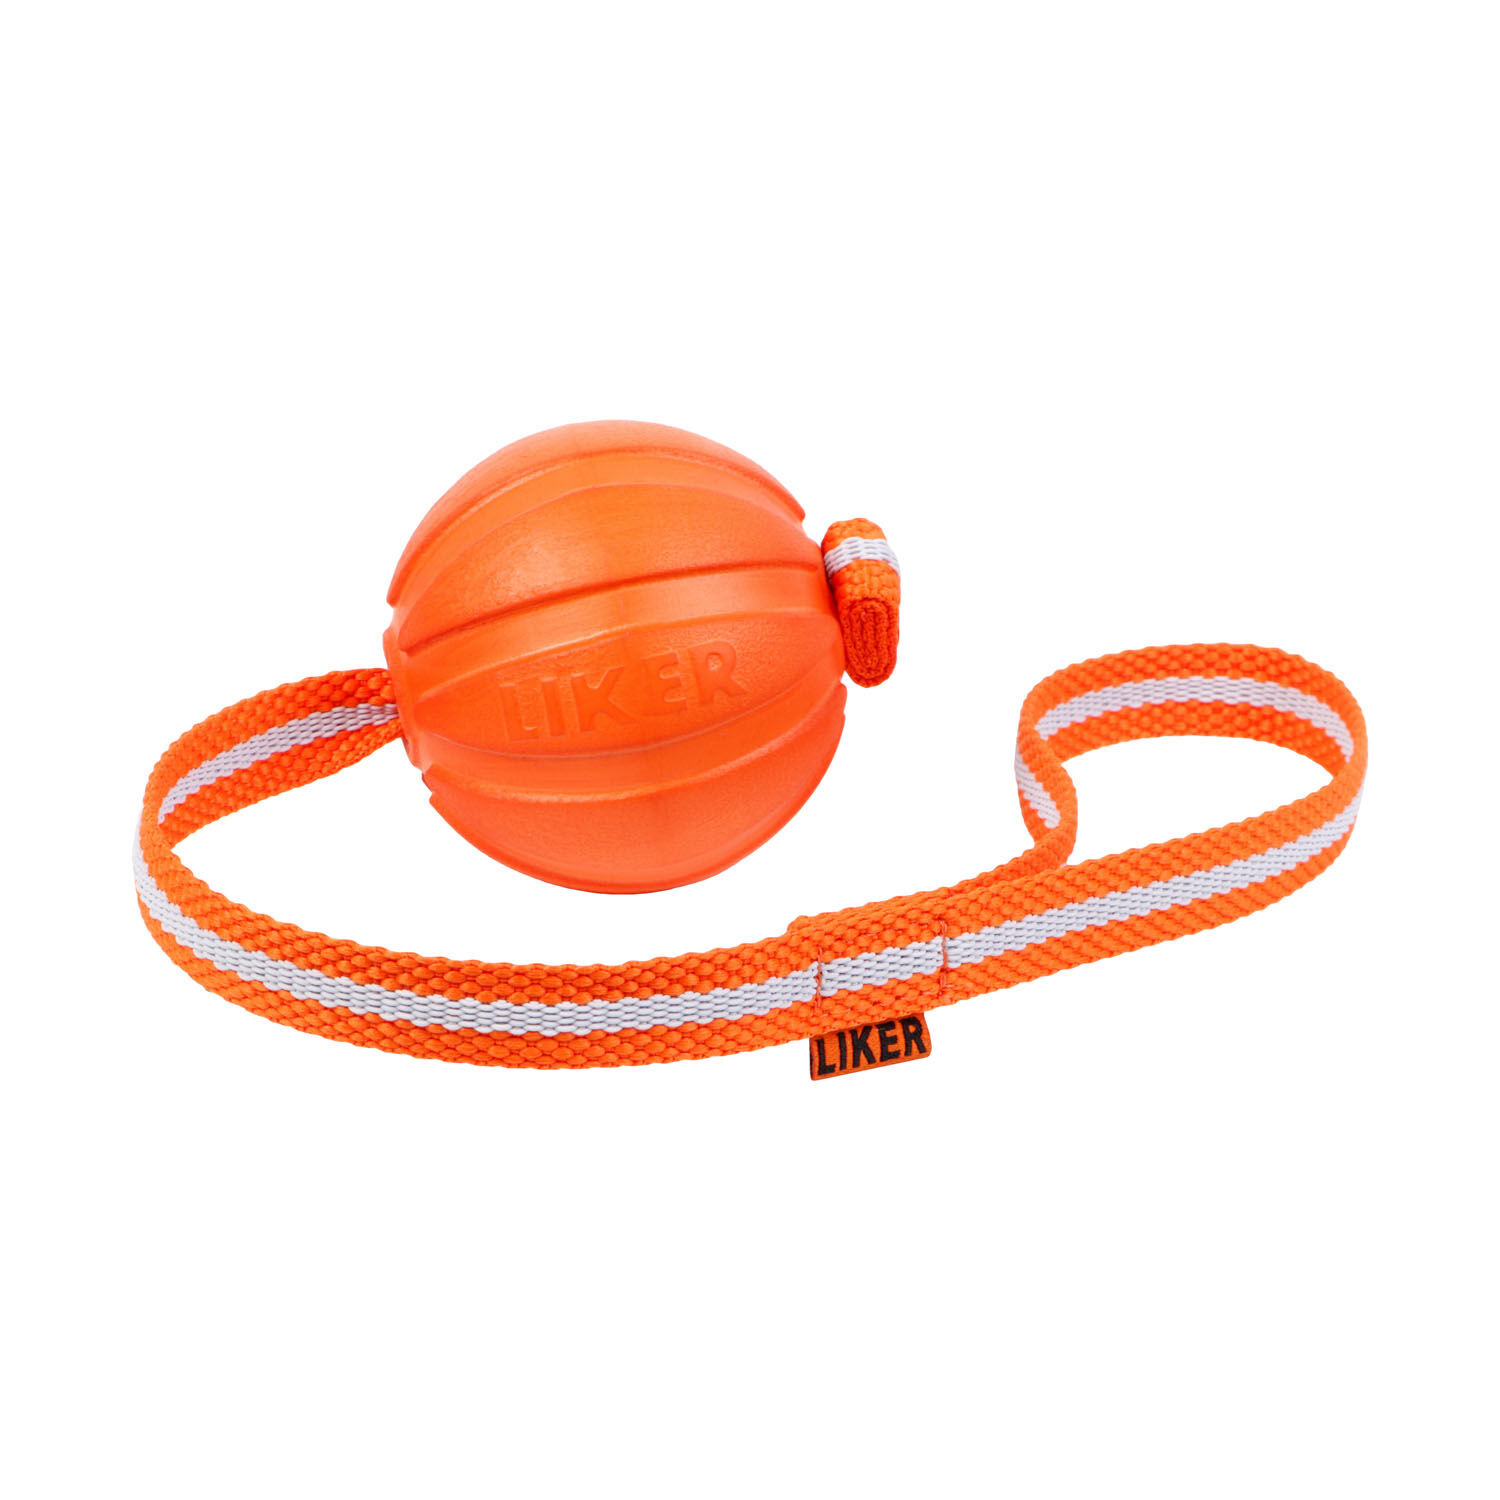 Collar-LikerBall-mit-Schlaufe-weite-Wuerfe-Zerrspiele-schwimmfaehig-grelle-Farbe-orange